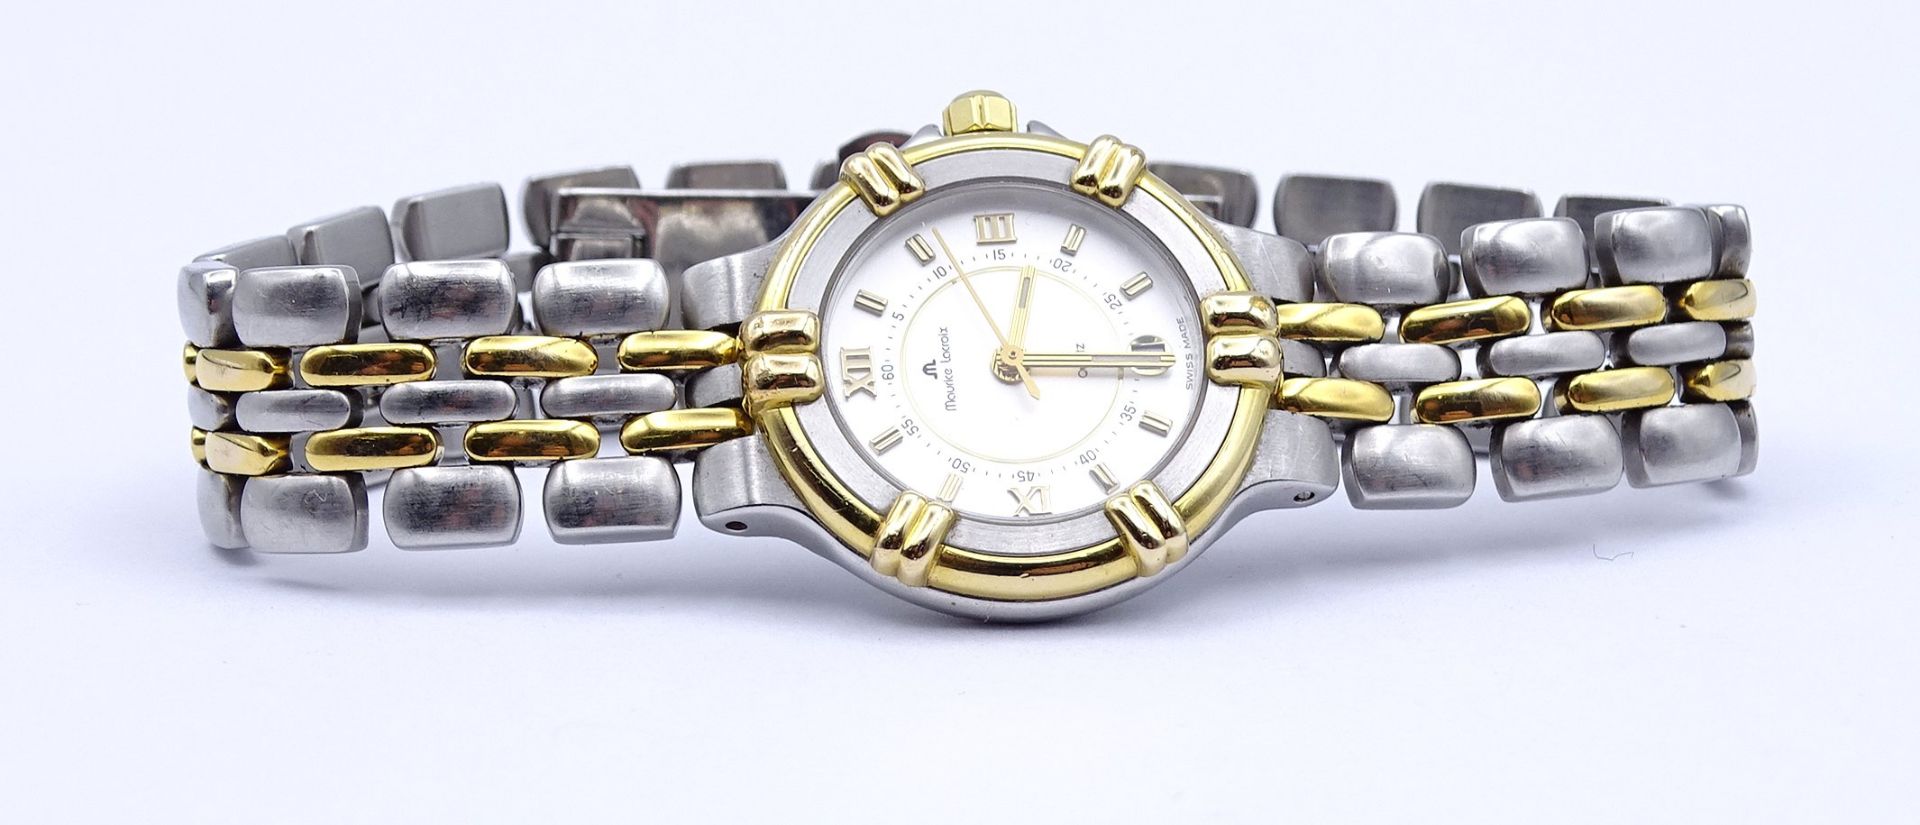 Armbanduhr "Maurice Lacroix", 75326, Quartzwerk, D. 26mm, Funktion nicht überprüft, etwas berieben